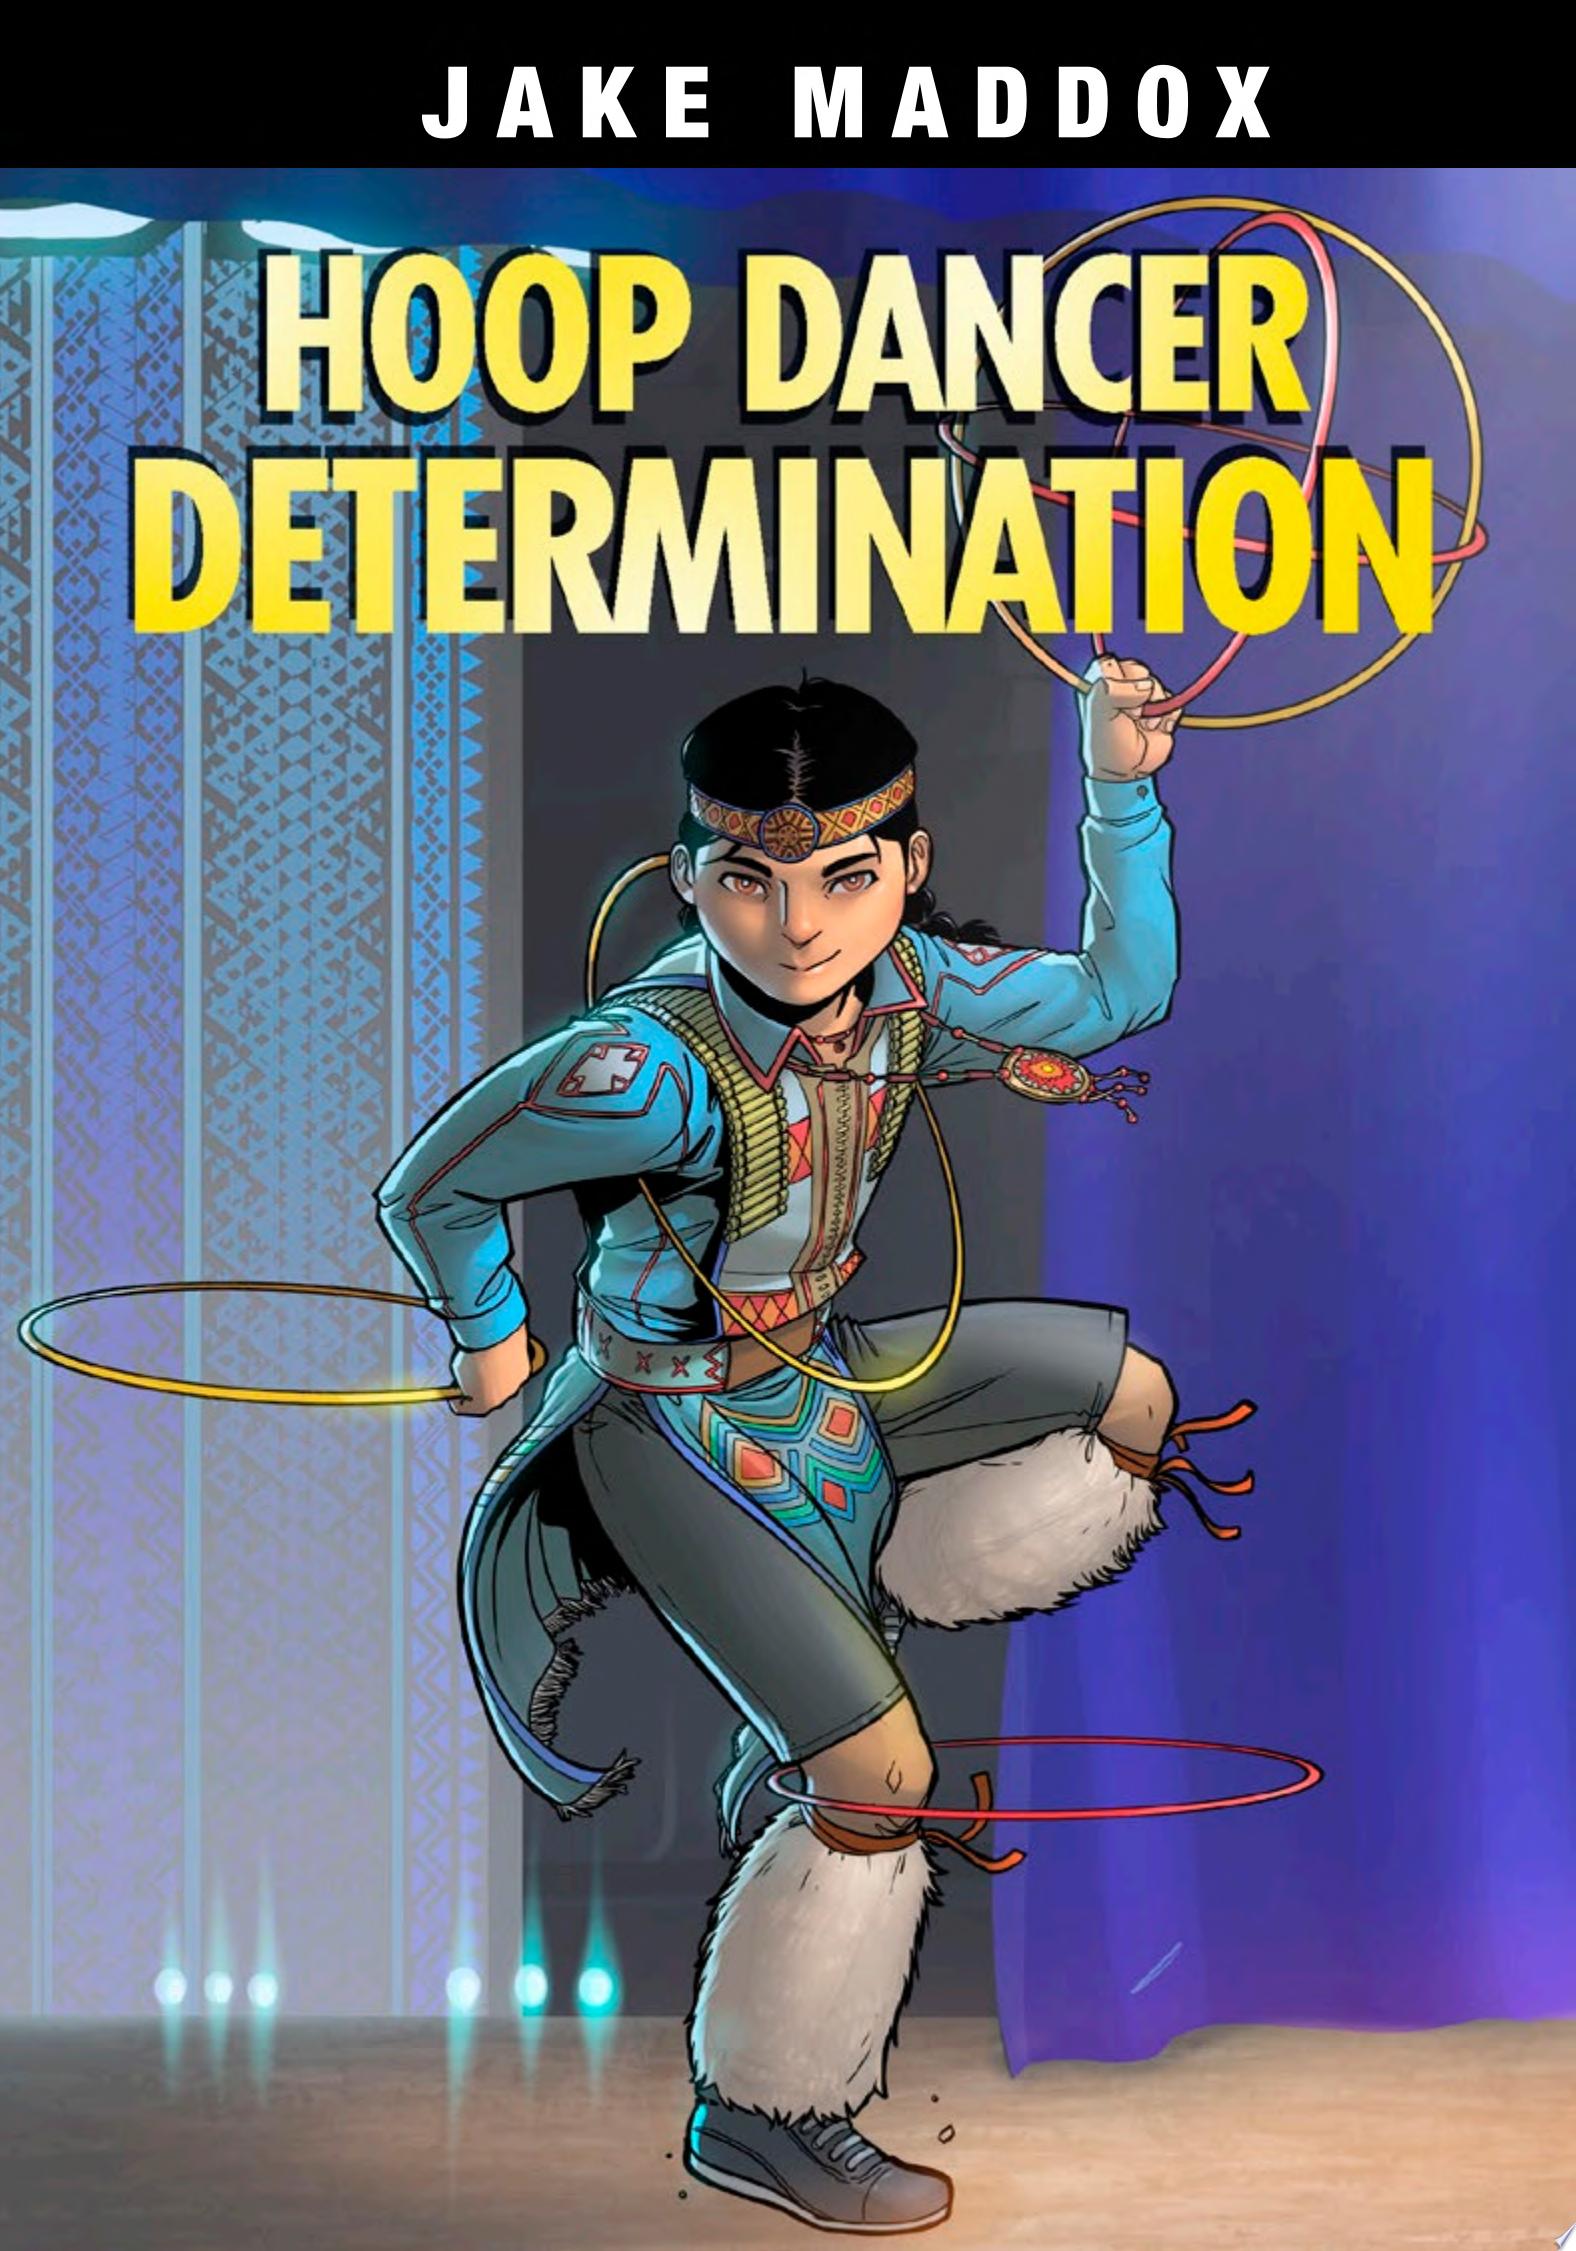 Image for "Hoop Dancer Determination"